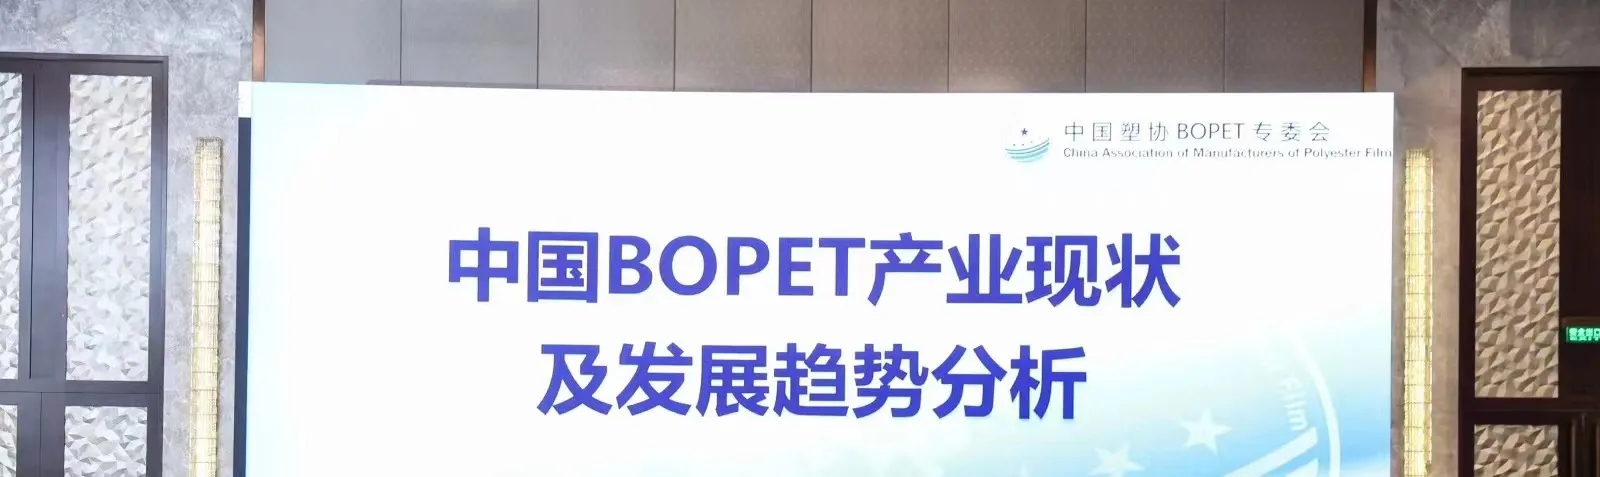 Conferencia sobre la situación actual y la tendencia de desarrollo de la industria BOPET de China